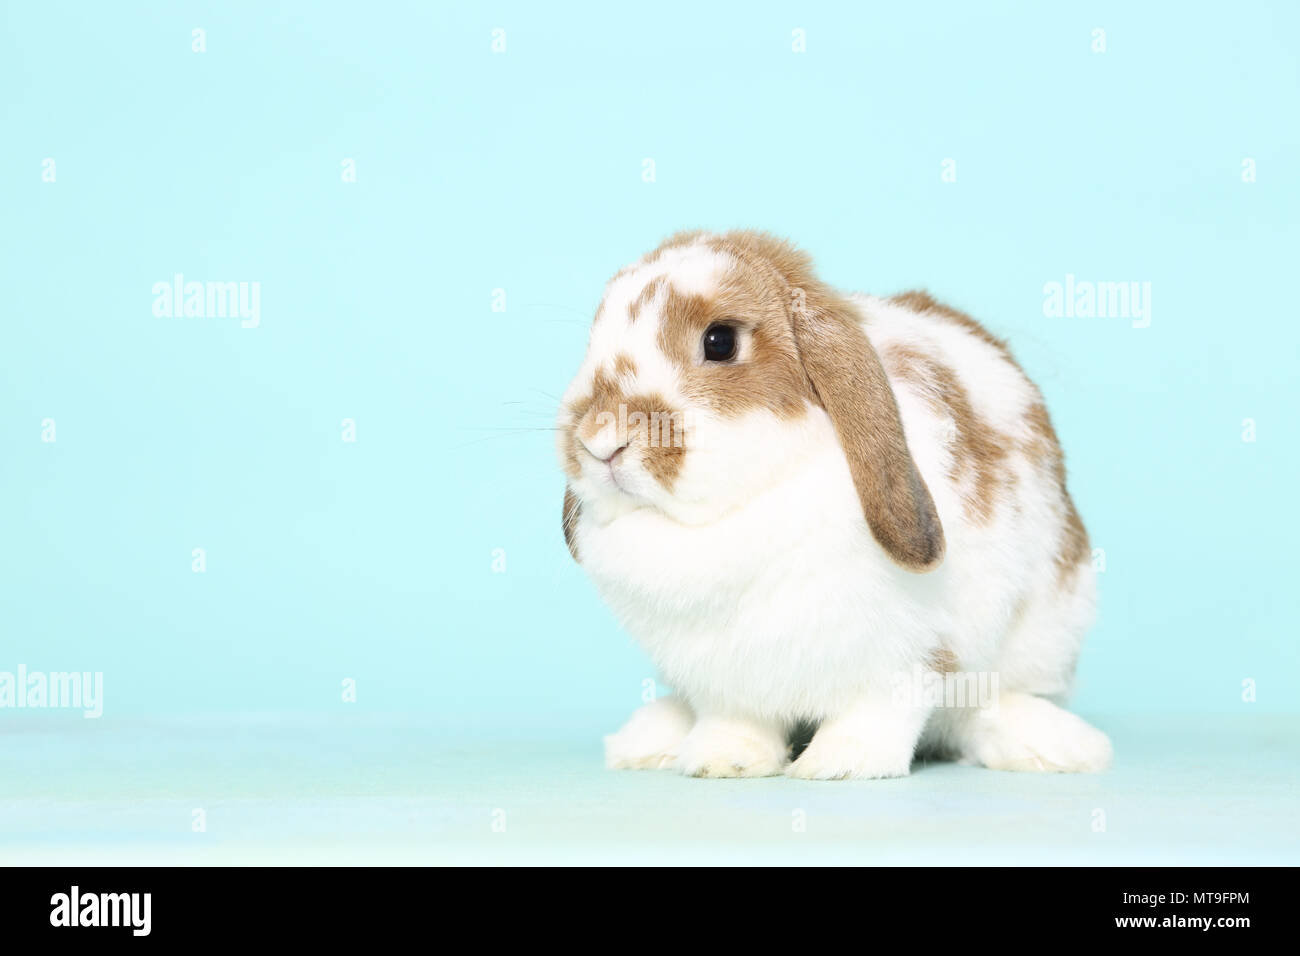 Dwarf Lop-eared Rabbit seduta. Studio Immagine contro un fondo azzurro Foto Stock